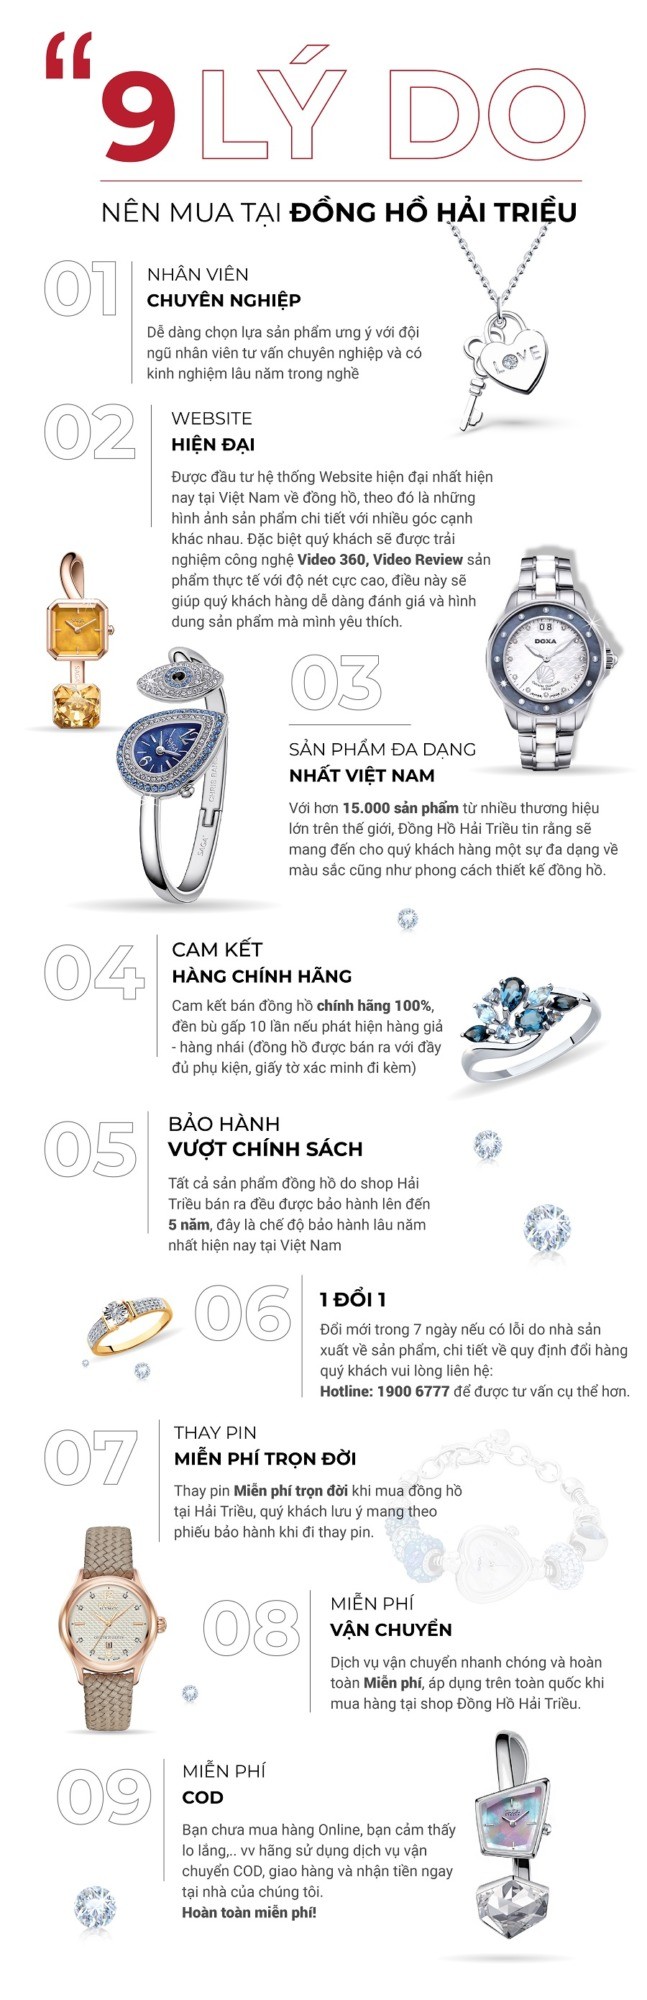 9 lý do nên mua đồng hồ Doxa tại Hải Triều